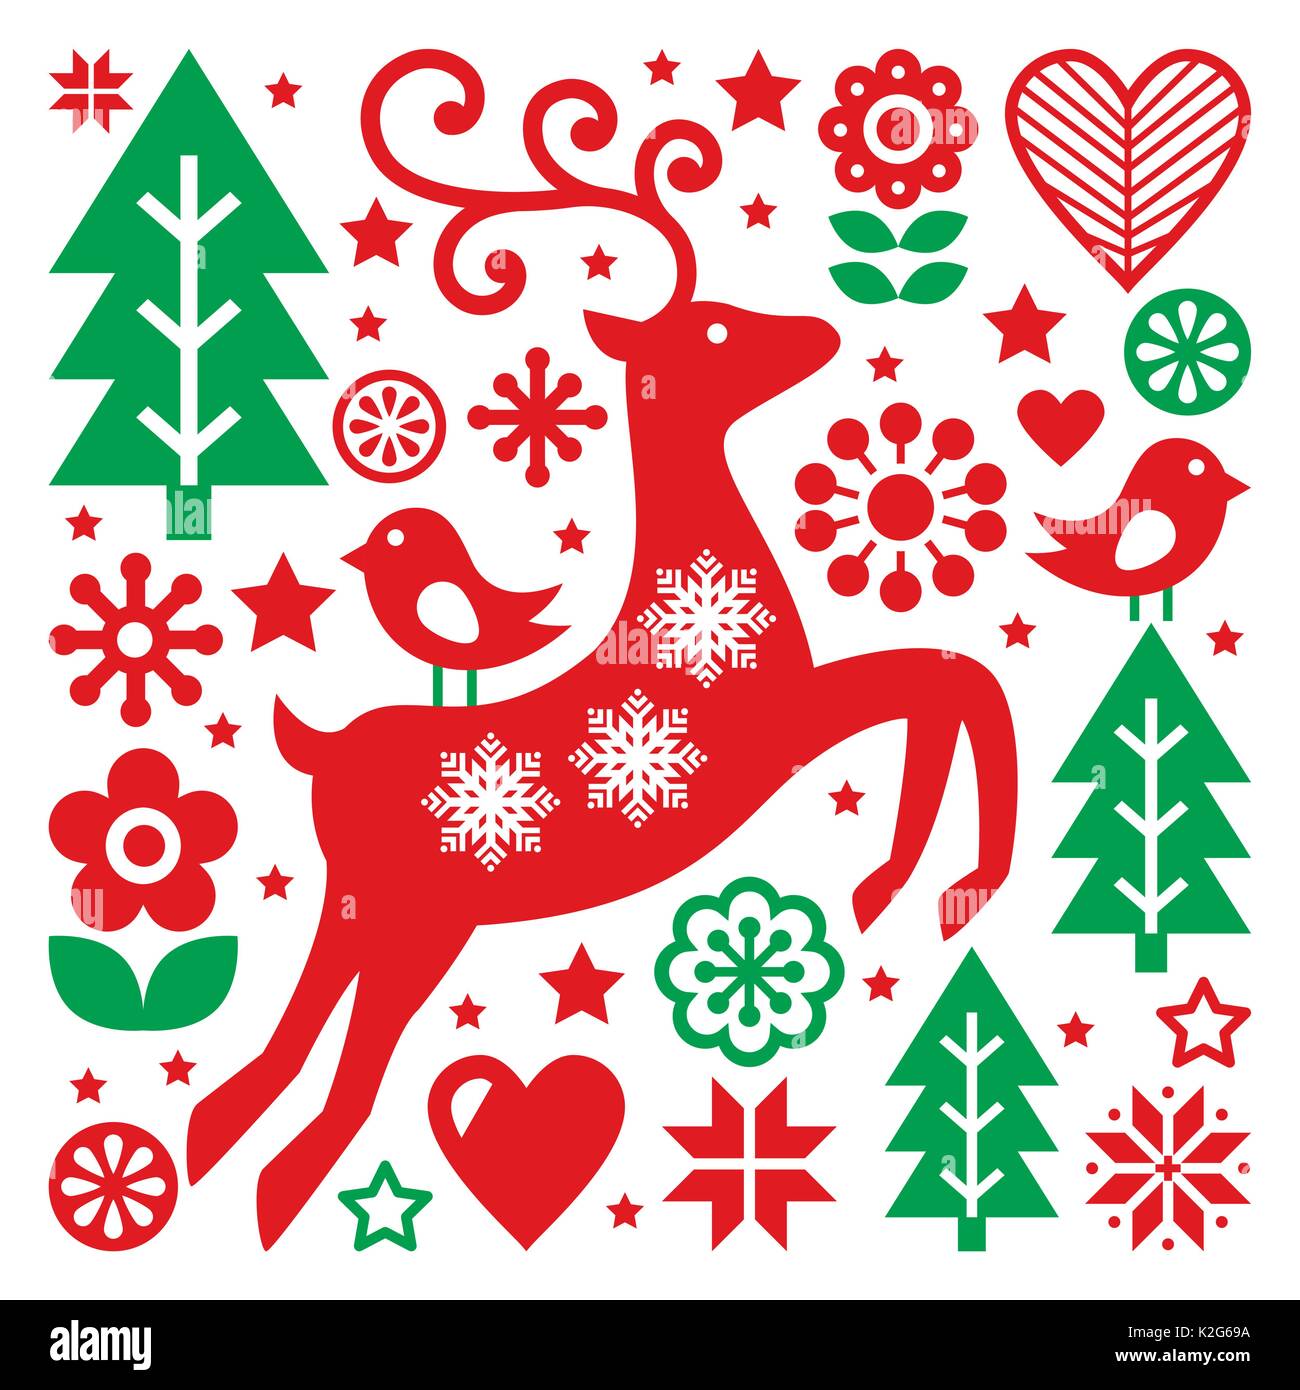 Weihnachten rote und grüne Muster, skandinavischen Volkskunst, Rentiere, Vögel und Blumen Dekoration oder glückwunschkarte Stock Vektor